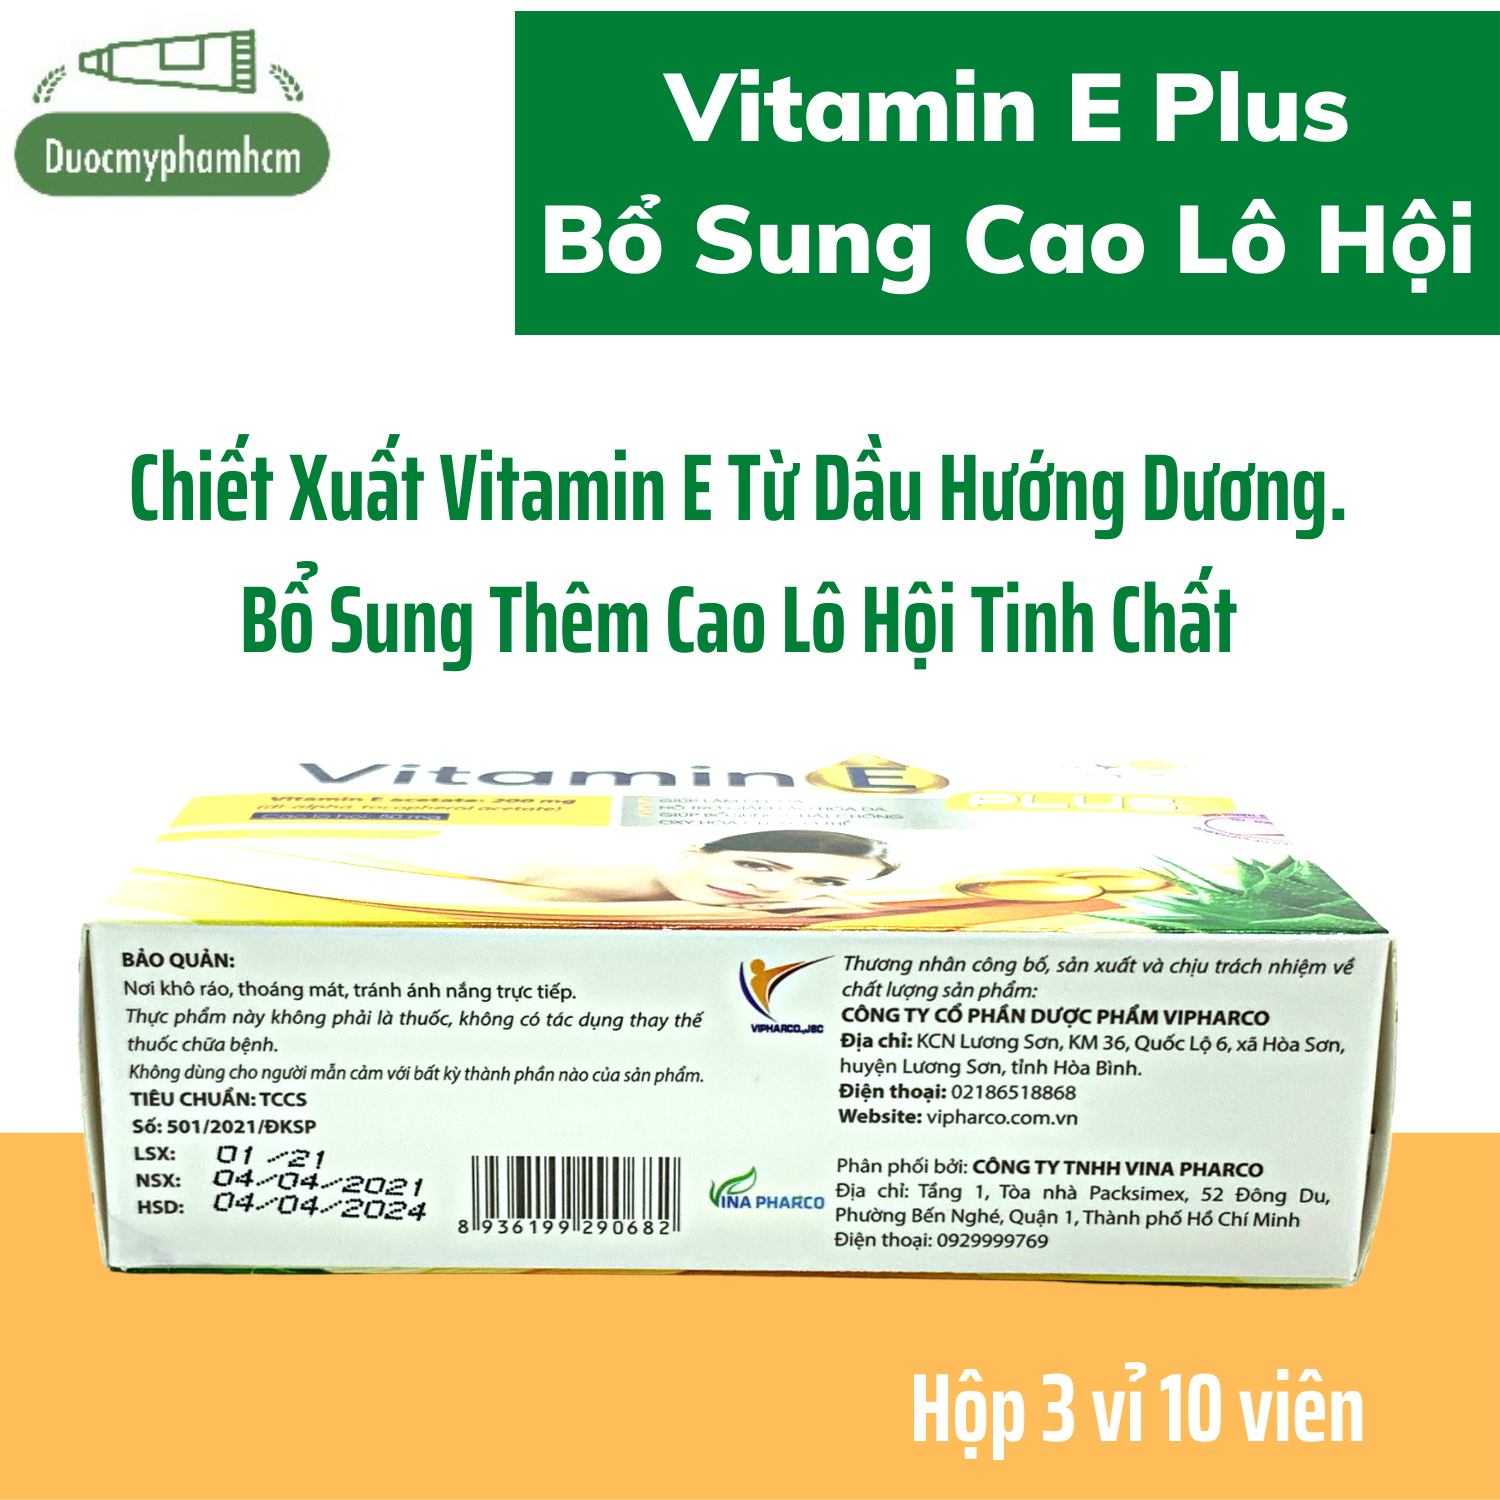 [HCM]Vitamin E Plus, Làm Đẹp Da, Ngừa Thâm Nám, Giảm Lão Hóa Da, Bổ Sung Chất Chống Oxy Hóa, Hộp 30 Viên